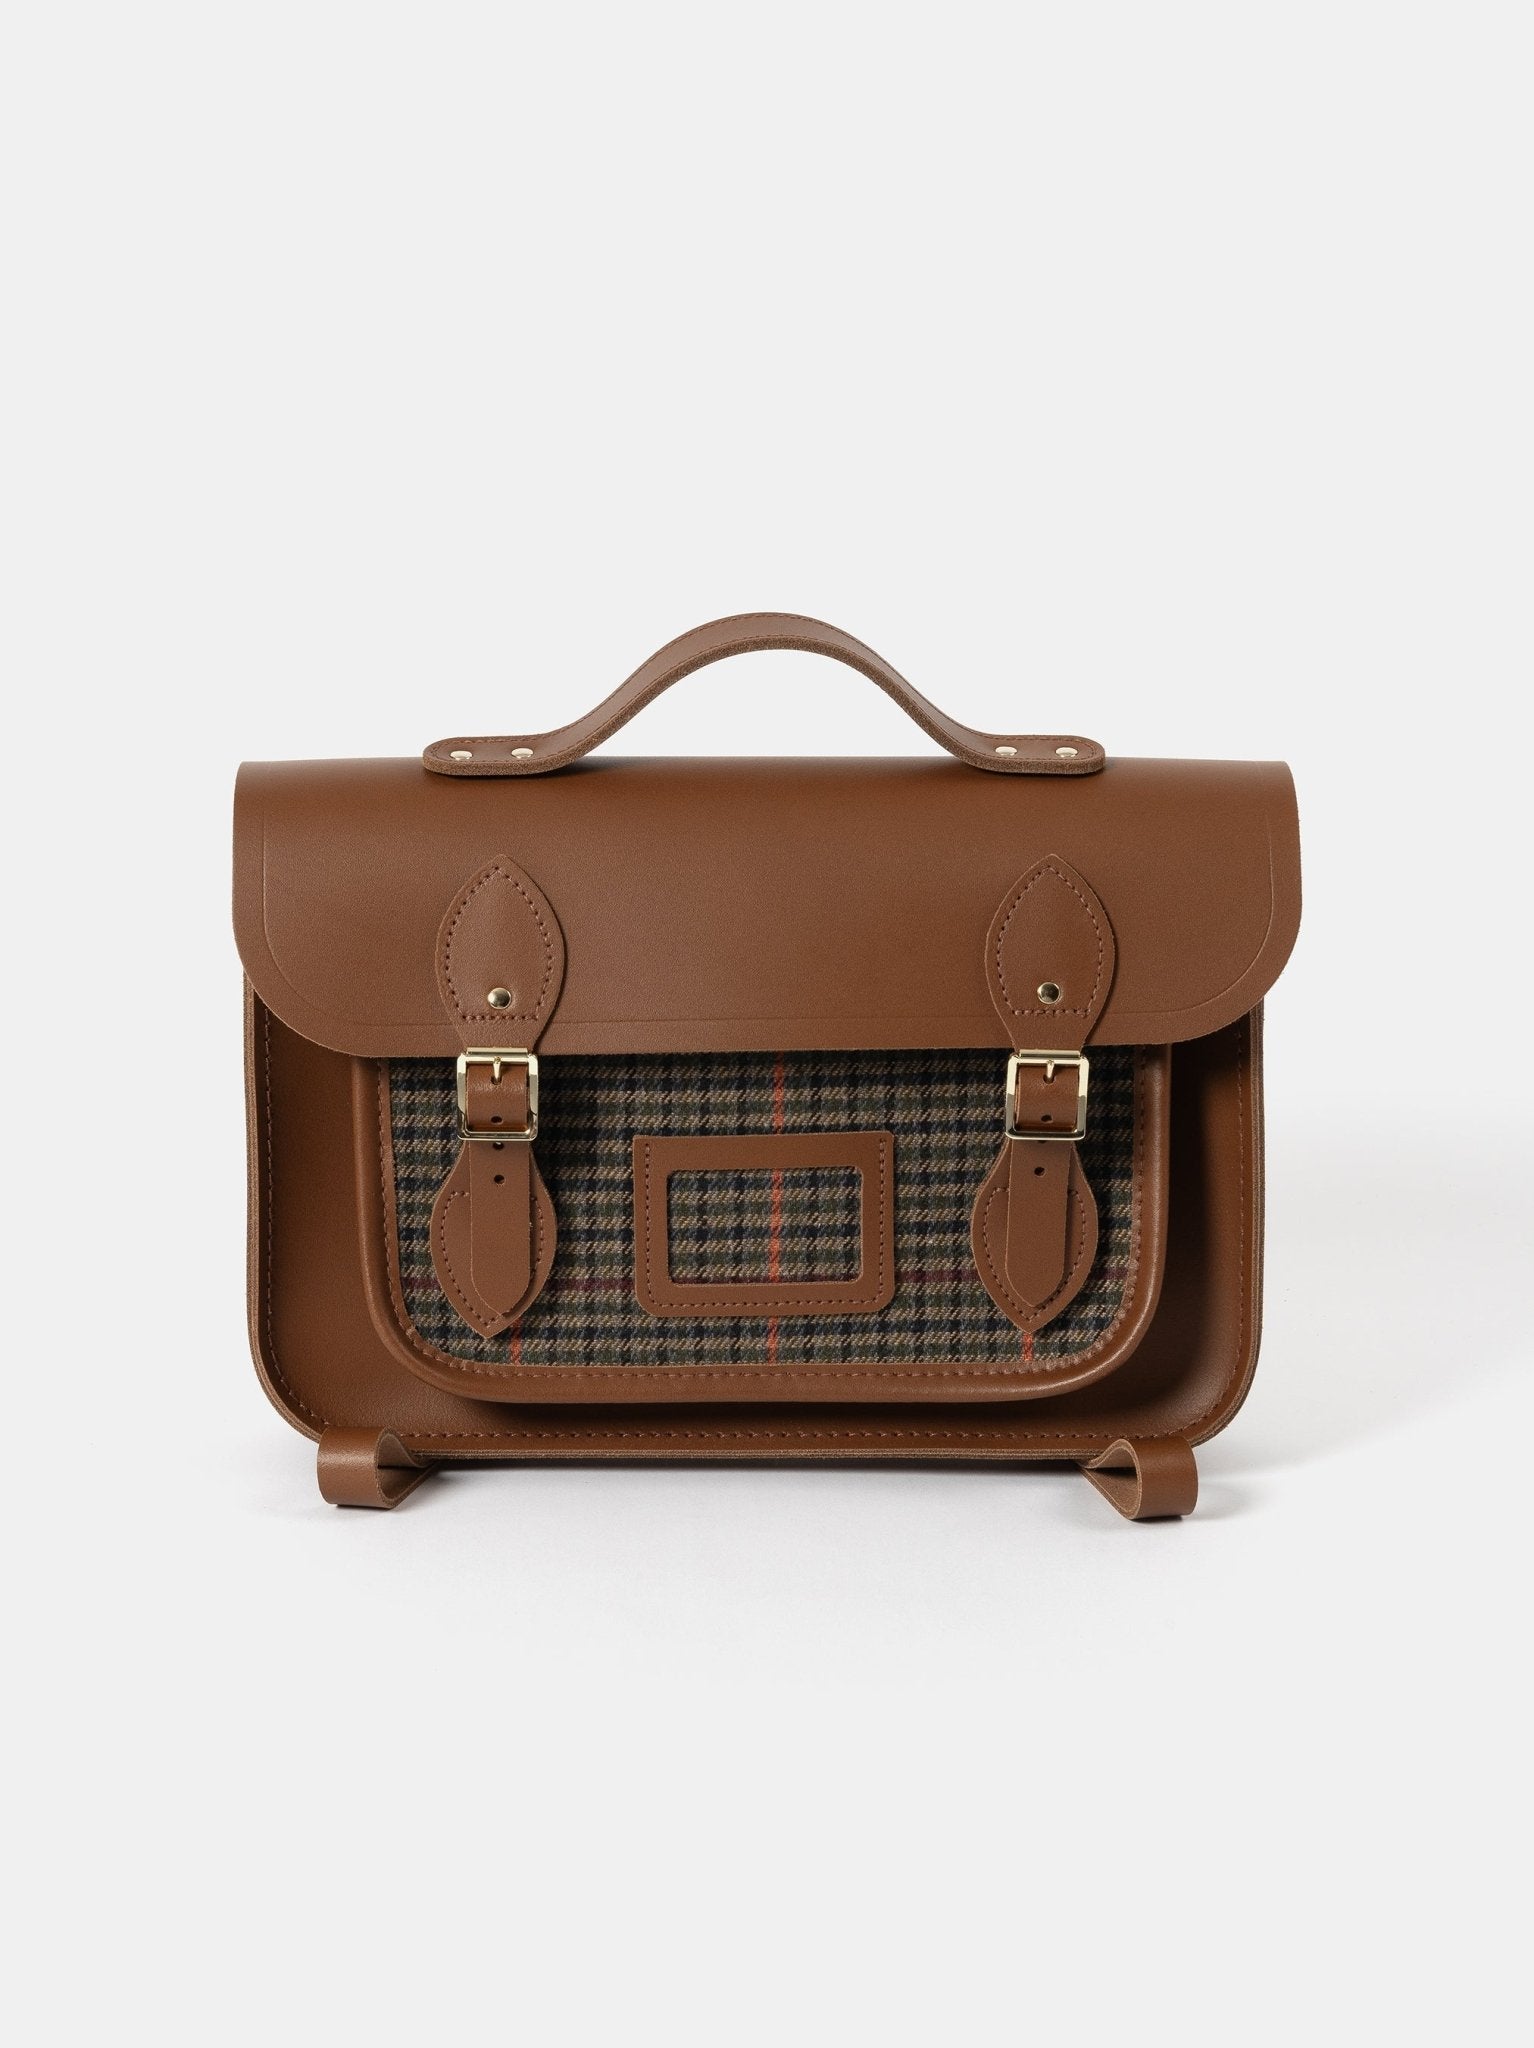 The 13 Inch Batchel Backpack - Vintage with Pepa London Brown Tweed